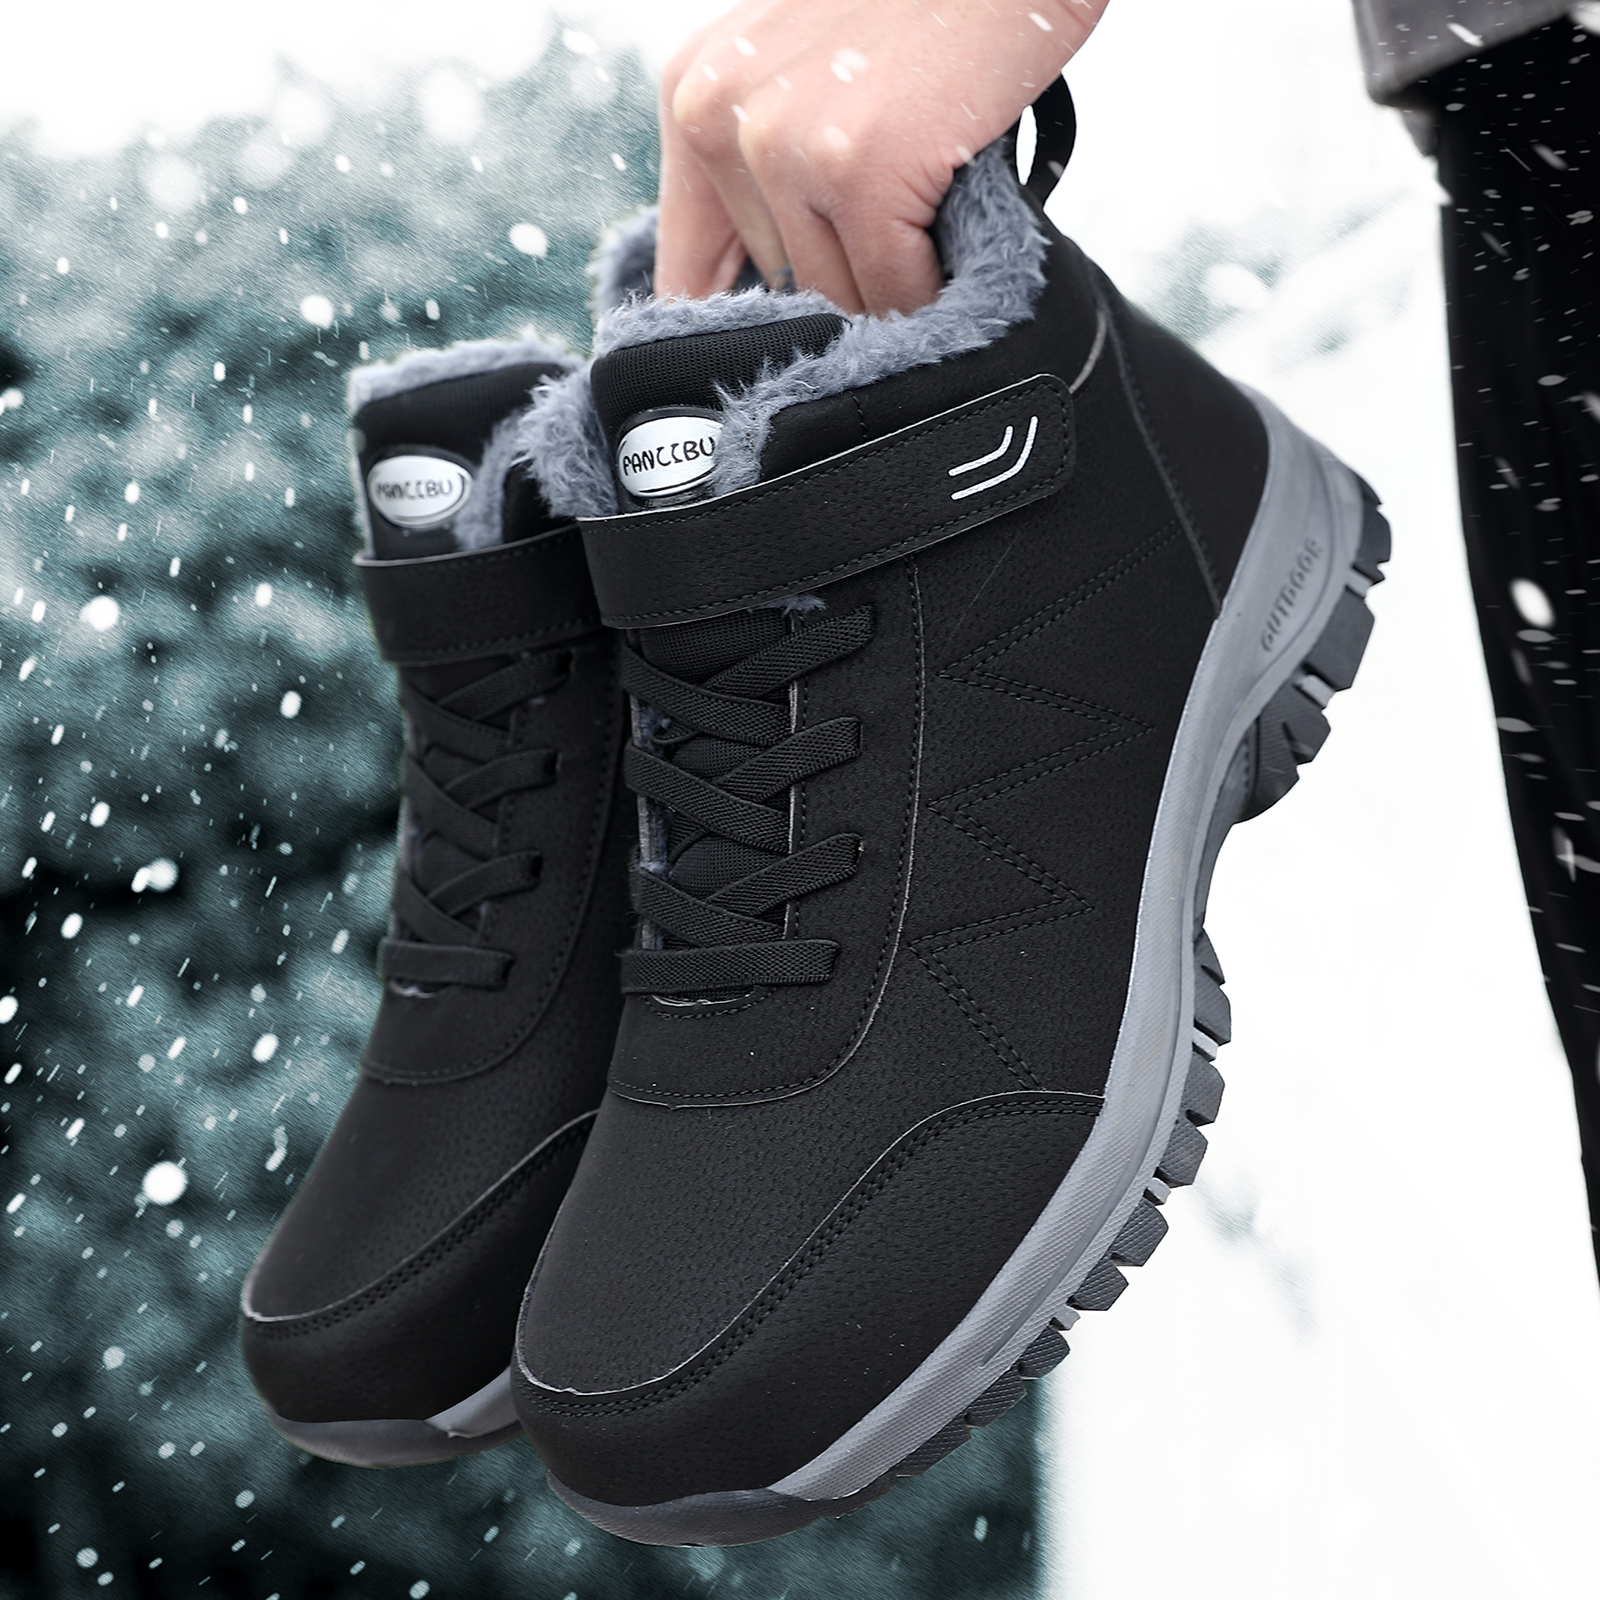 Boots de neige TEXTO noir bi matière à plateforme - Boots / bottines Femme